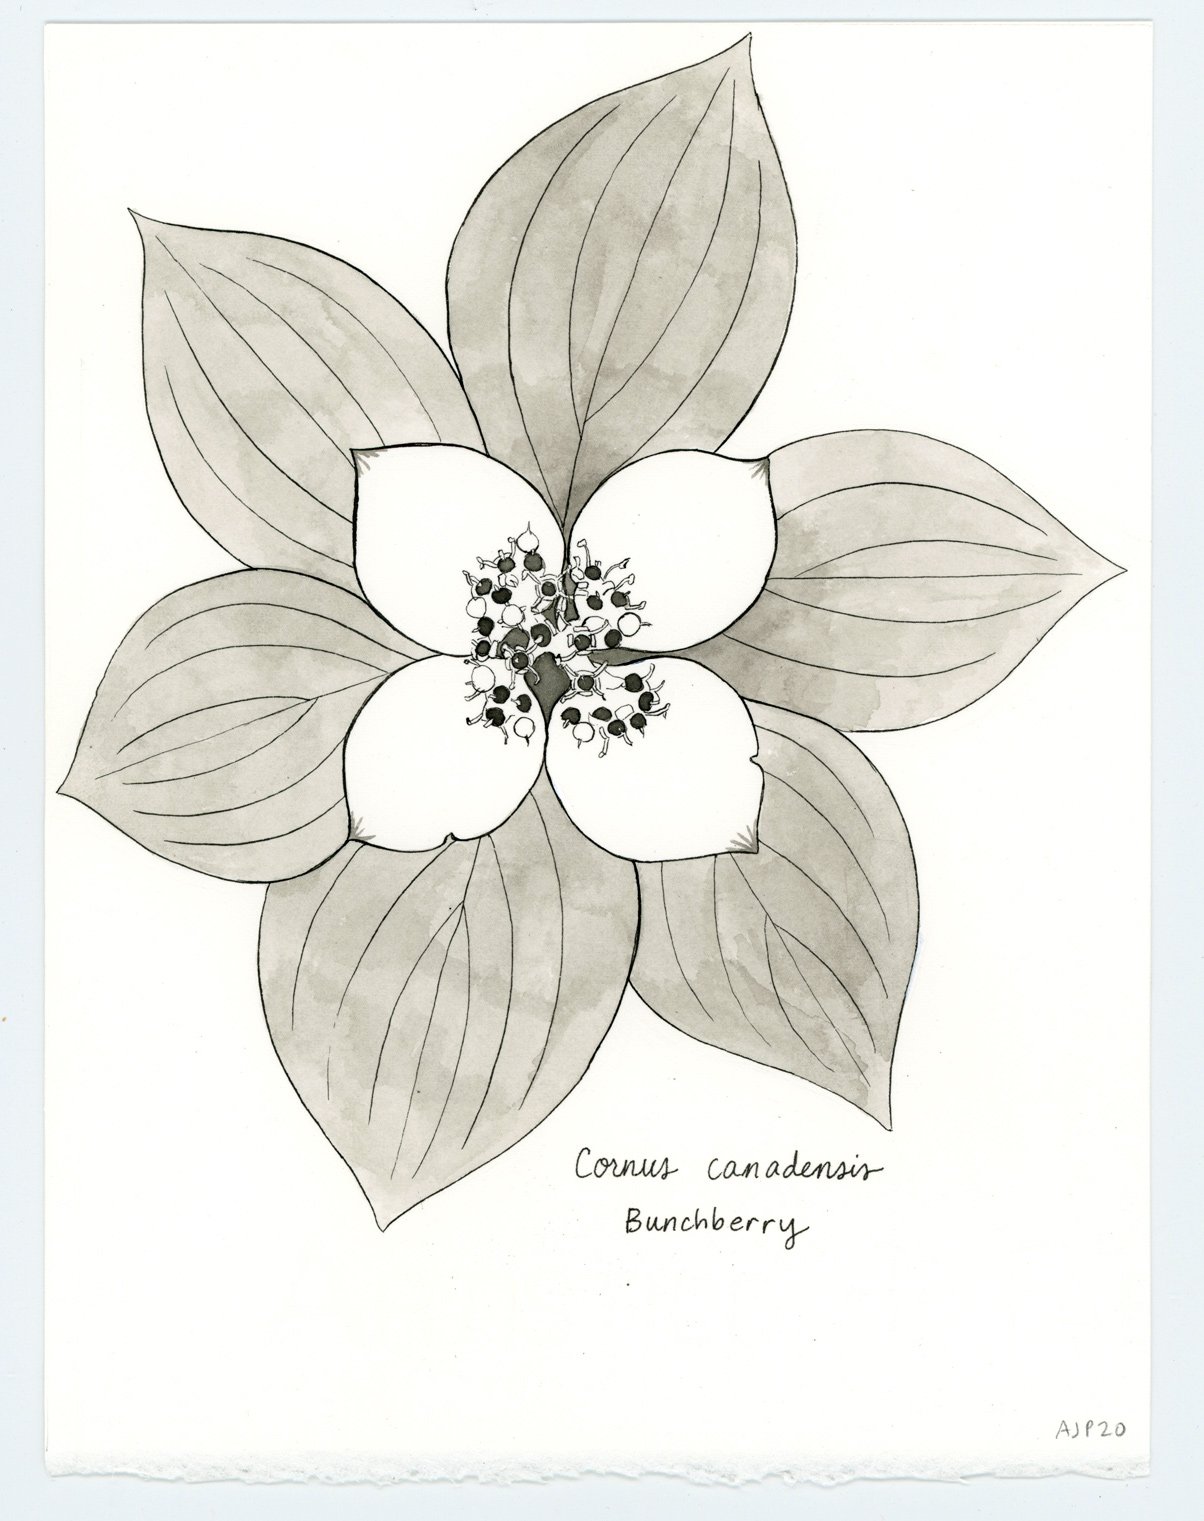 Cornus canadensis / Bunchberry